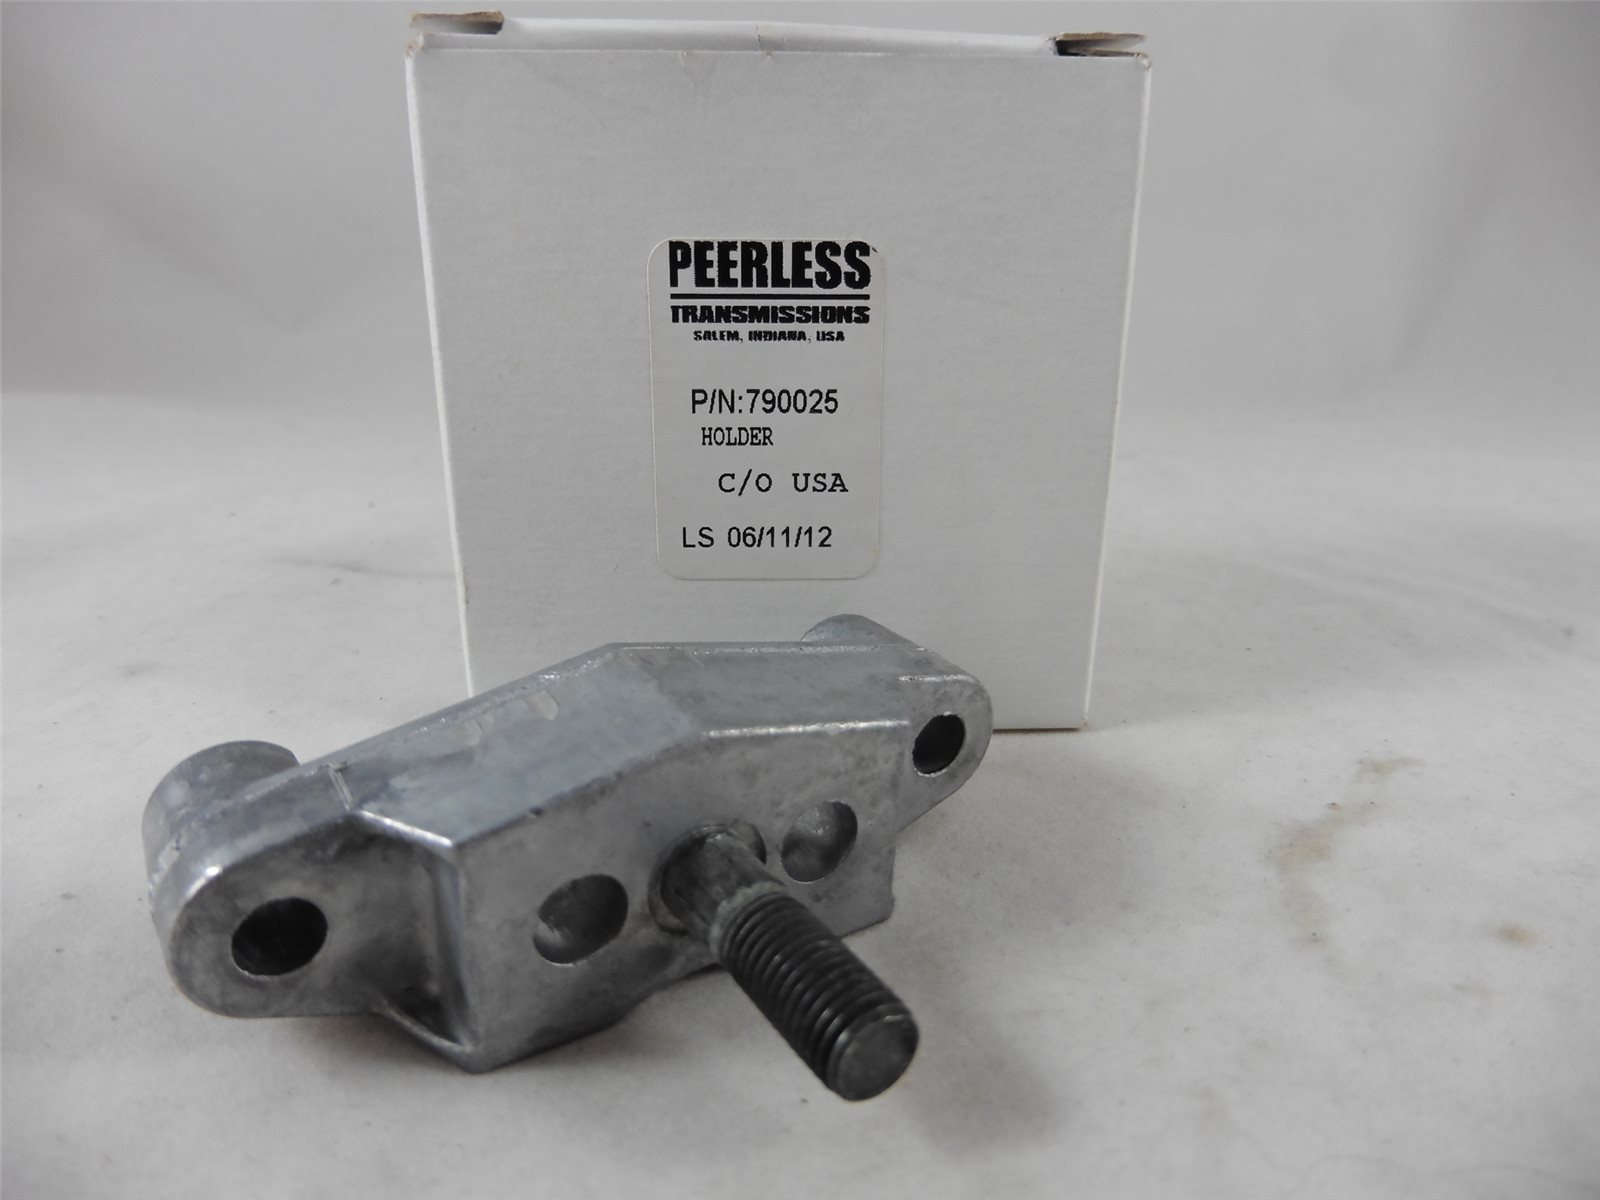 Bremsklötze 2 x Bremsbelag für Peerless Getriebe-Scheibenbremsen MTD 717-0678 